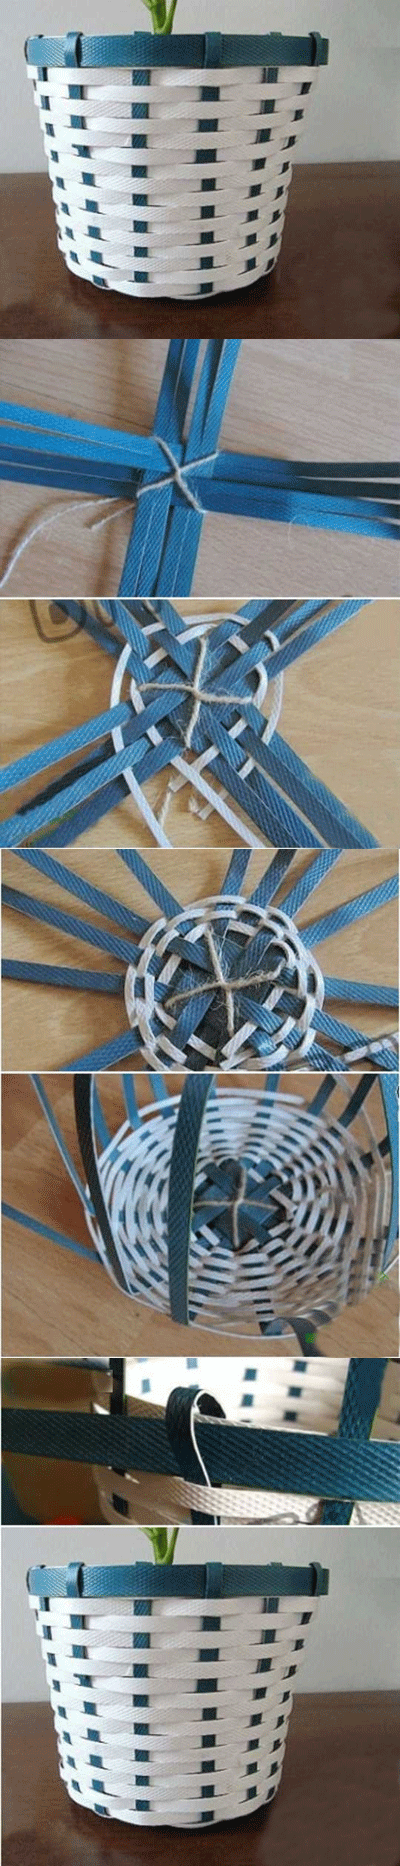 纸绳编织收纳筐教程图片